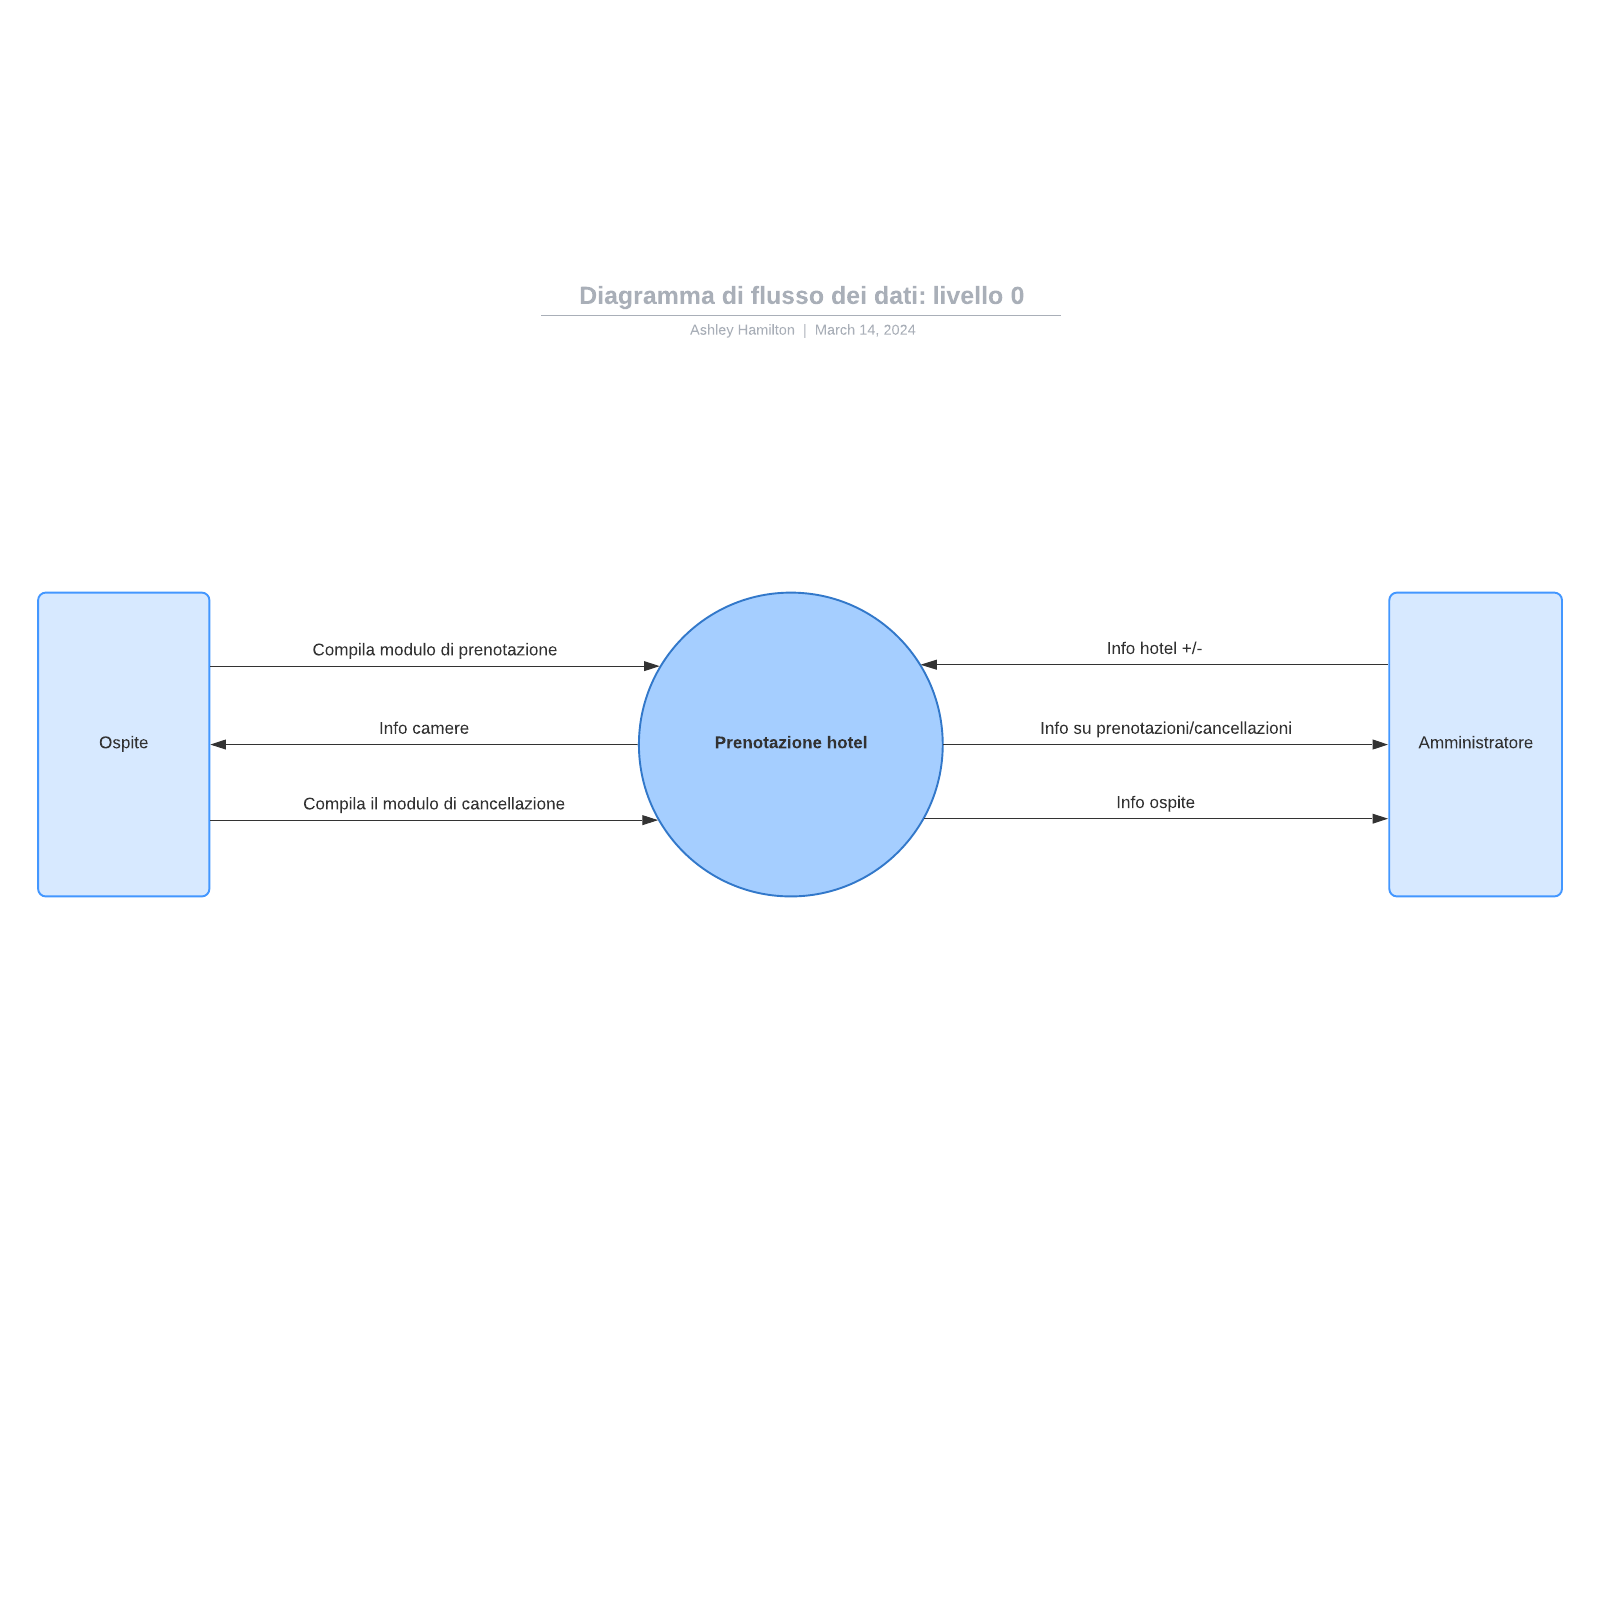 Diagramma di flusso dei dati, livello 0